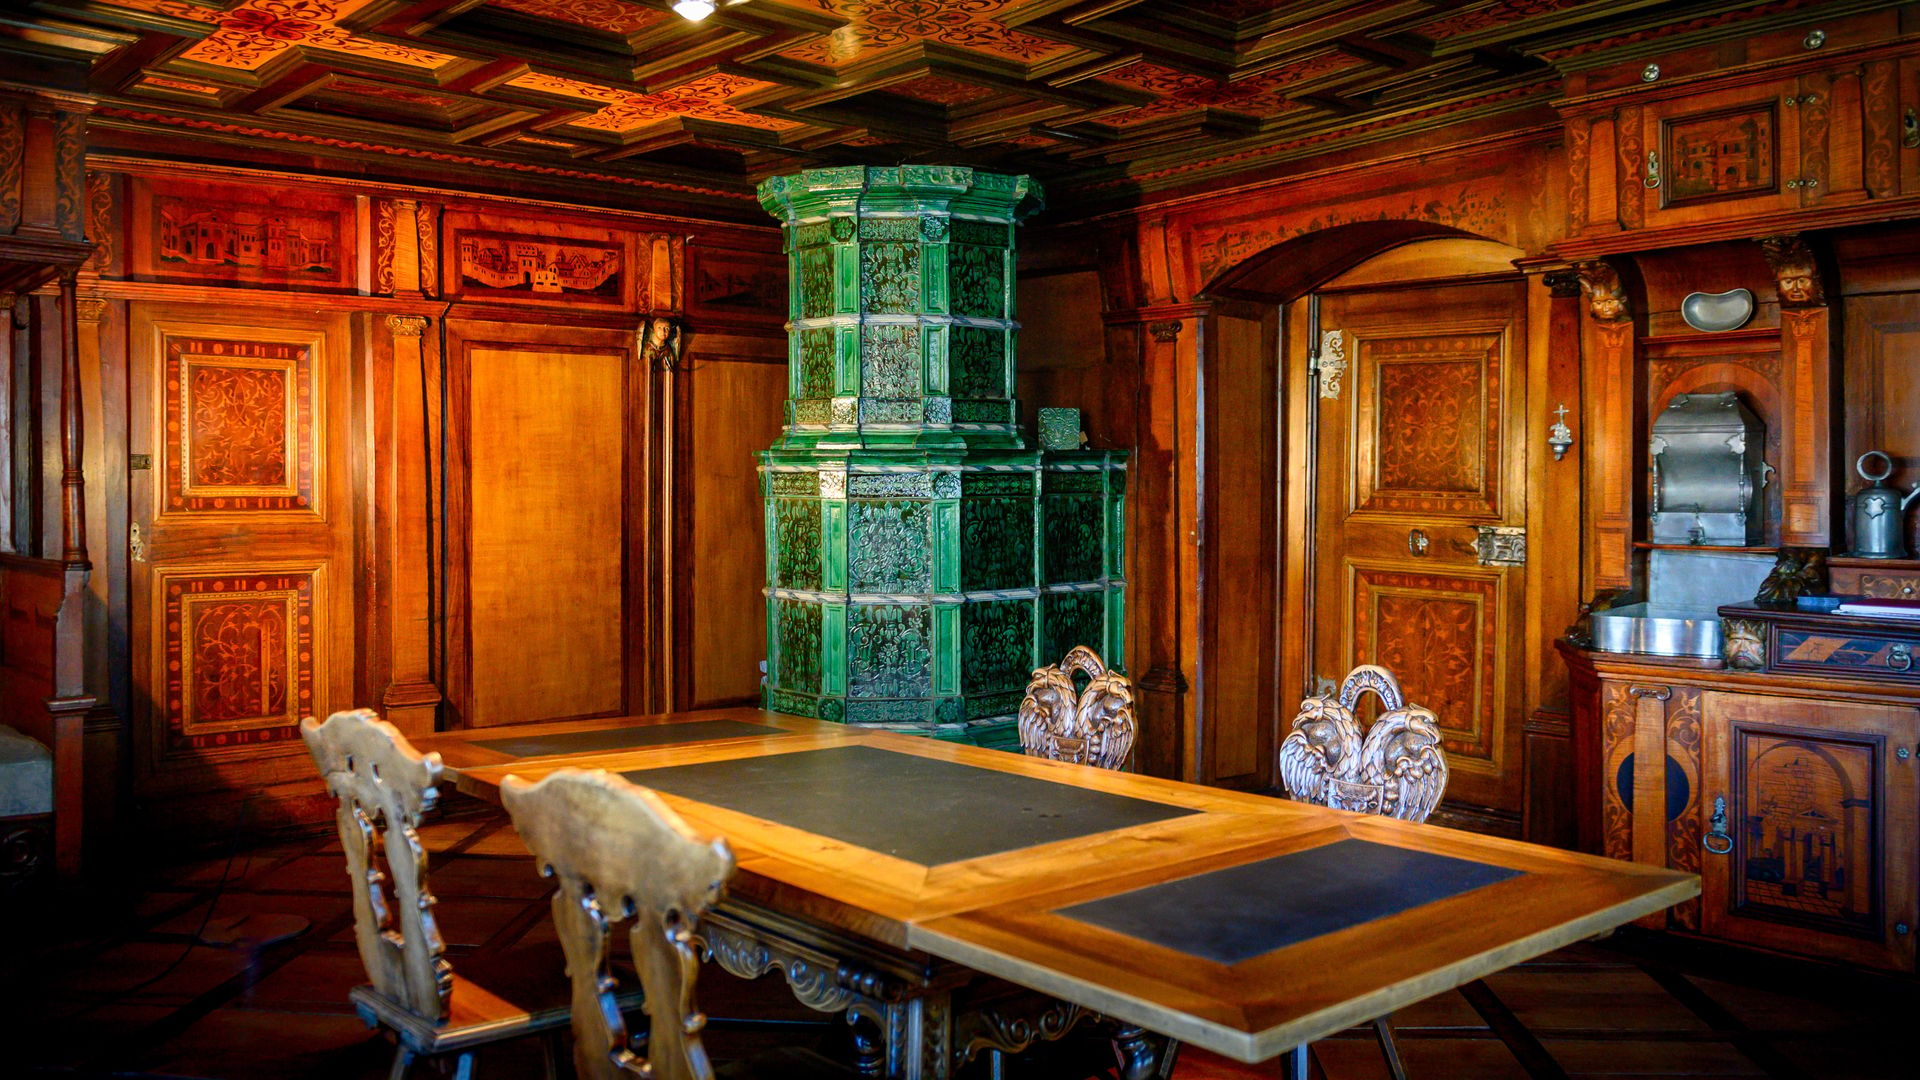 Zimmer aus Holz mit grünem Kamin, Tisch um den 4 Stühle stehen